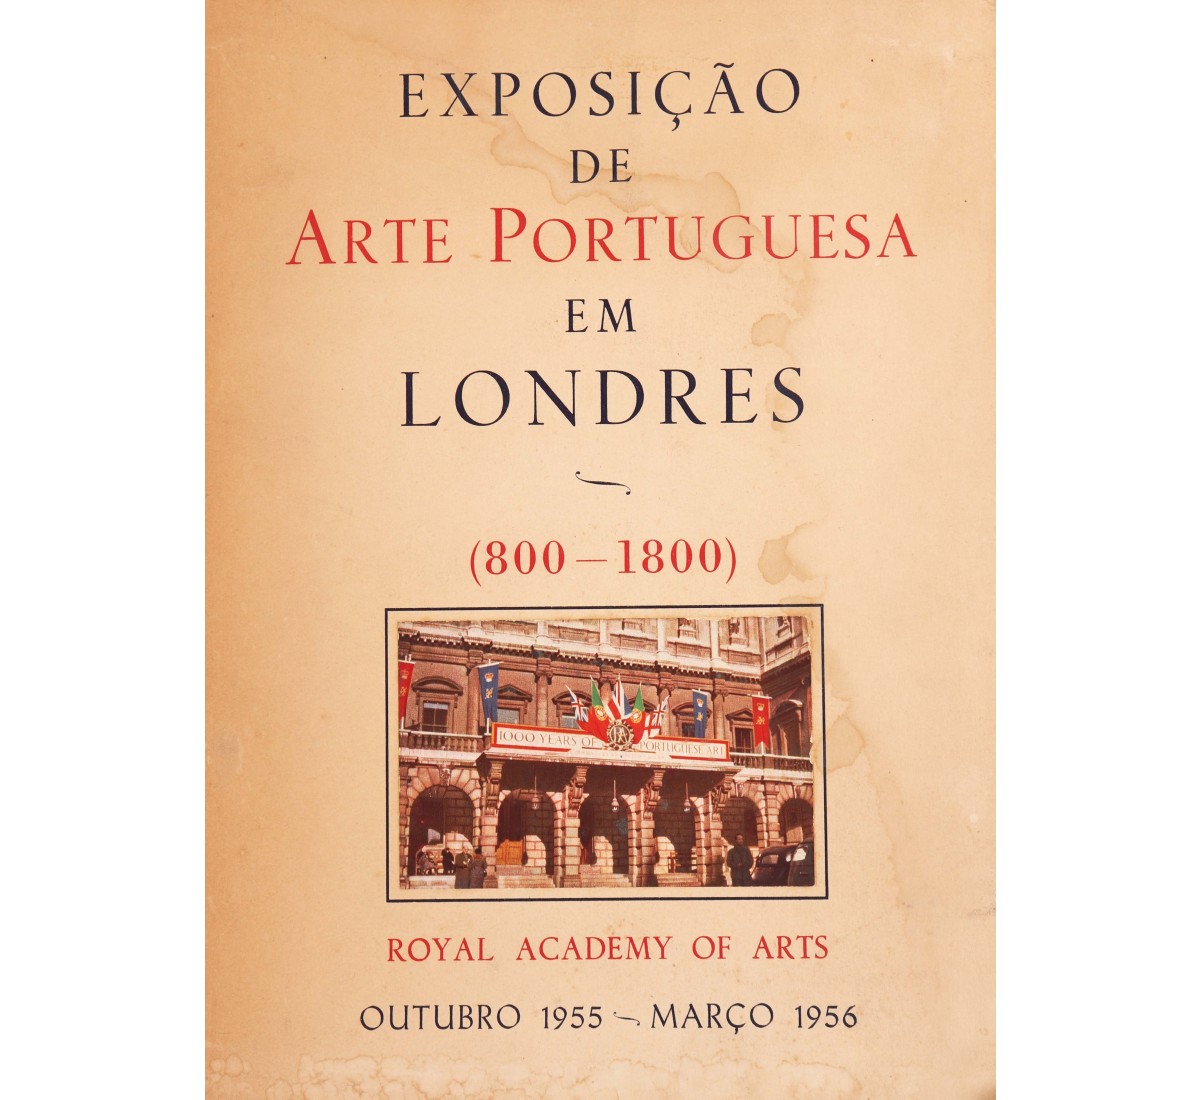 EXPOSIÇÃO DE ARTE PORTUGUESA EM LONDRES (800-1800)